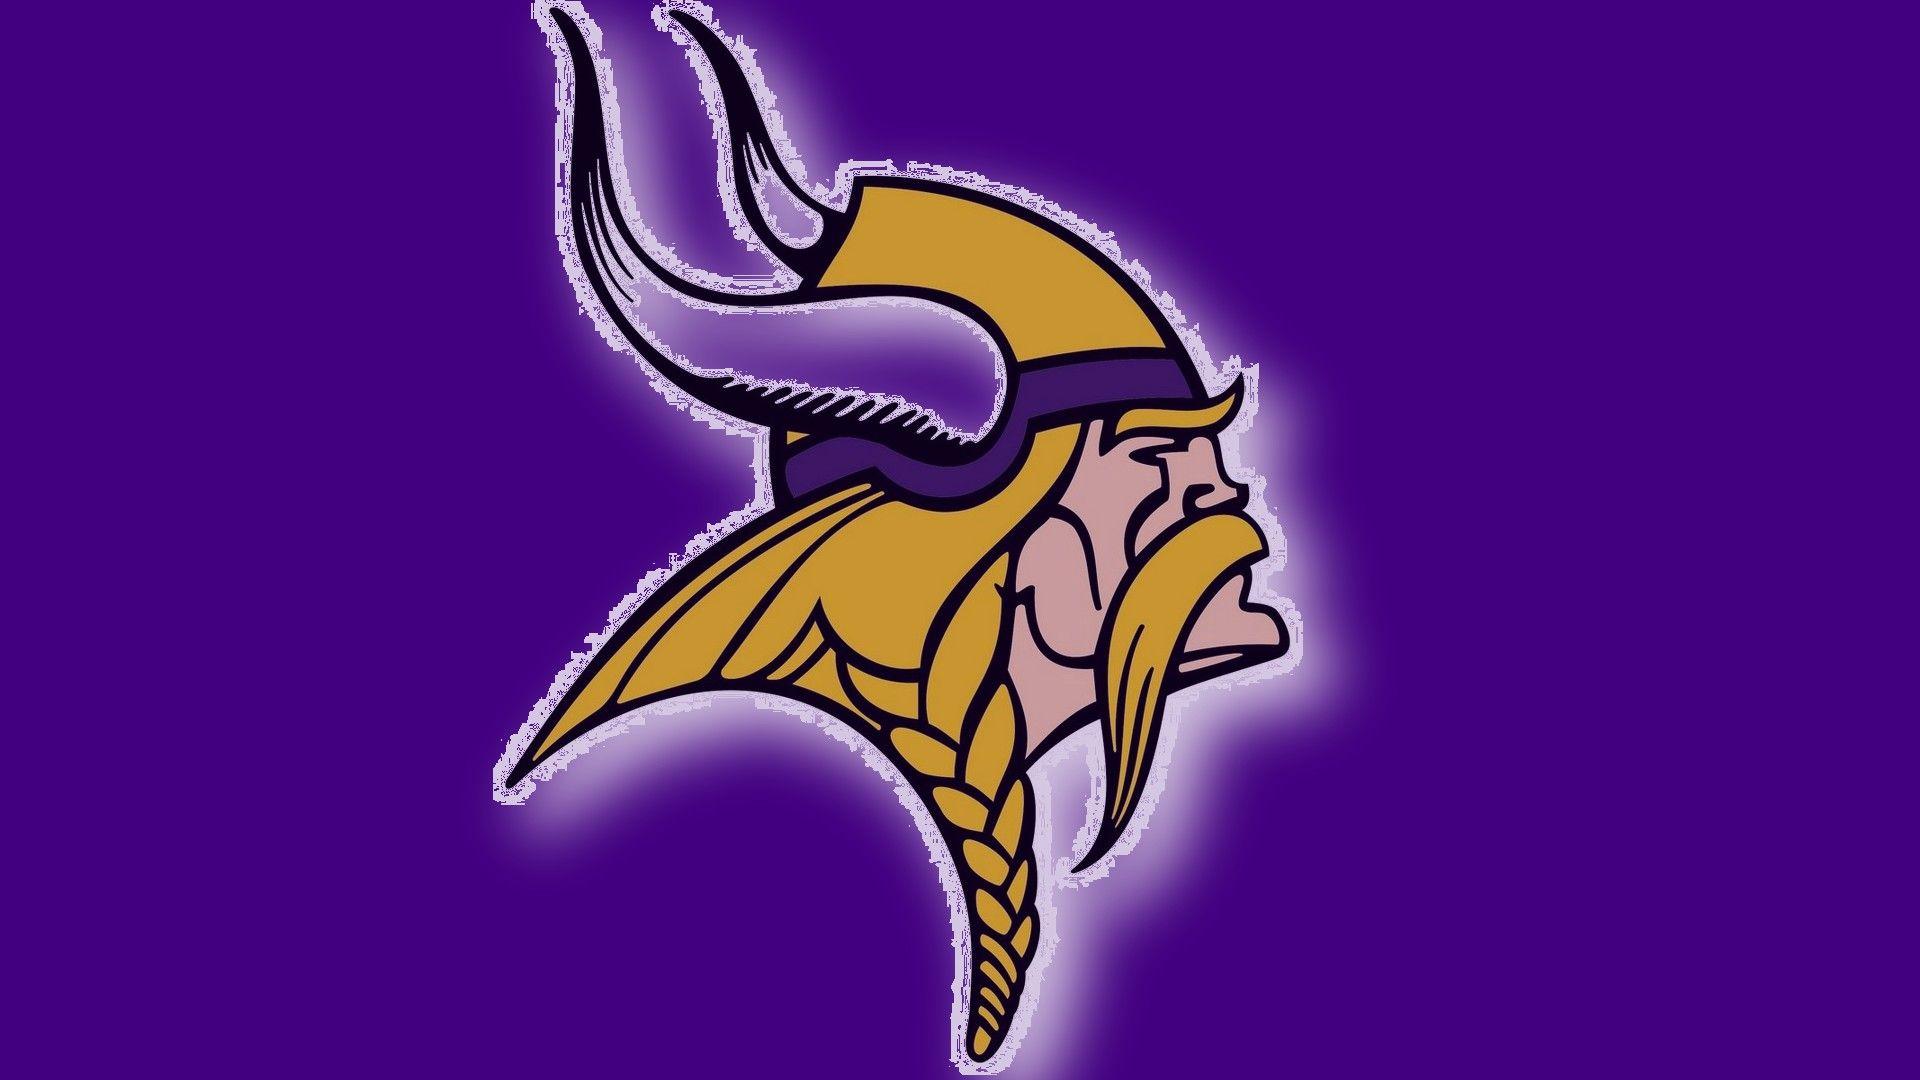 NFL Vikings Logo - NFL Minnesota Vikings Logo 1920x1080 HD NFL / Minnesota Vikings